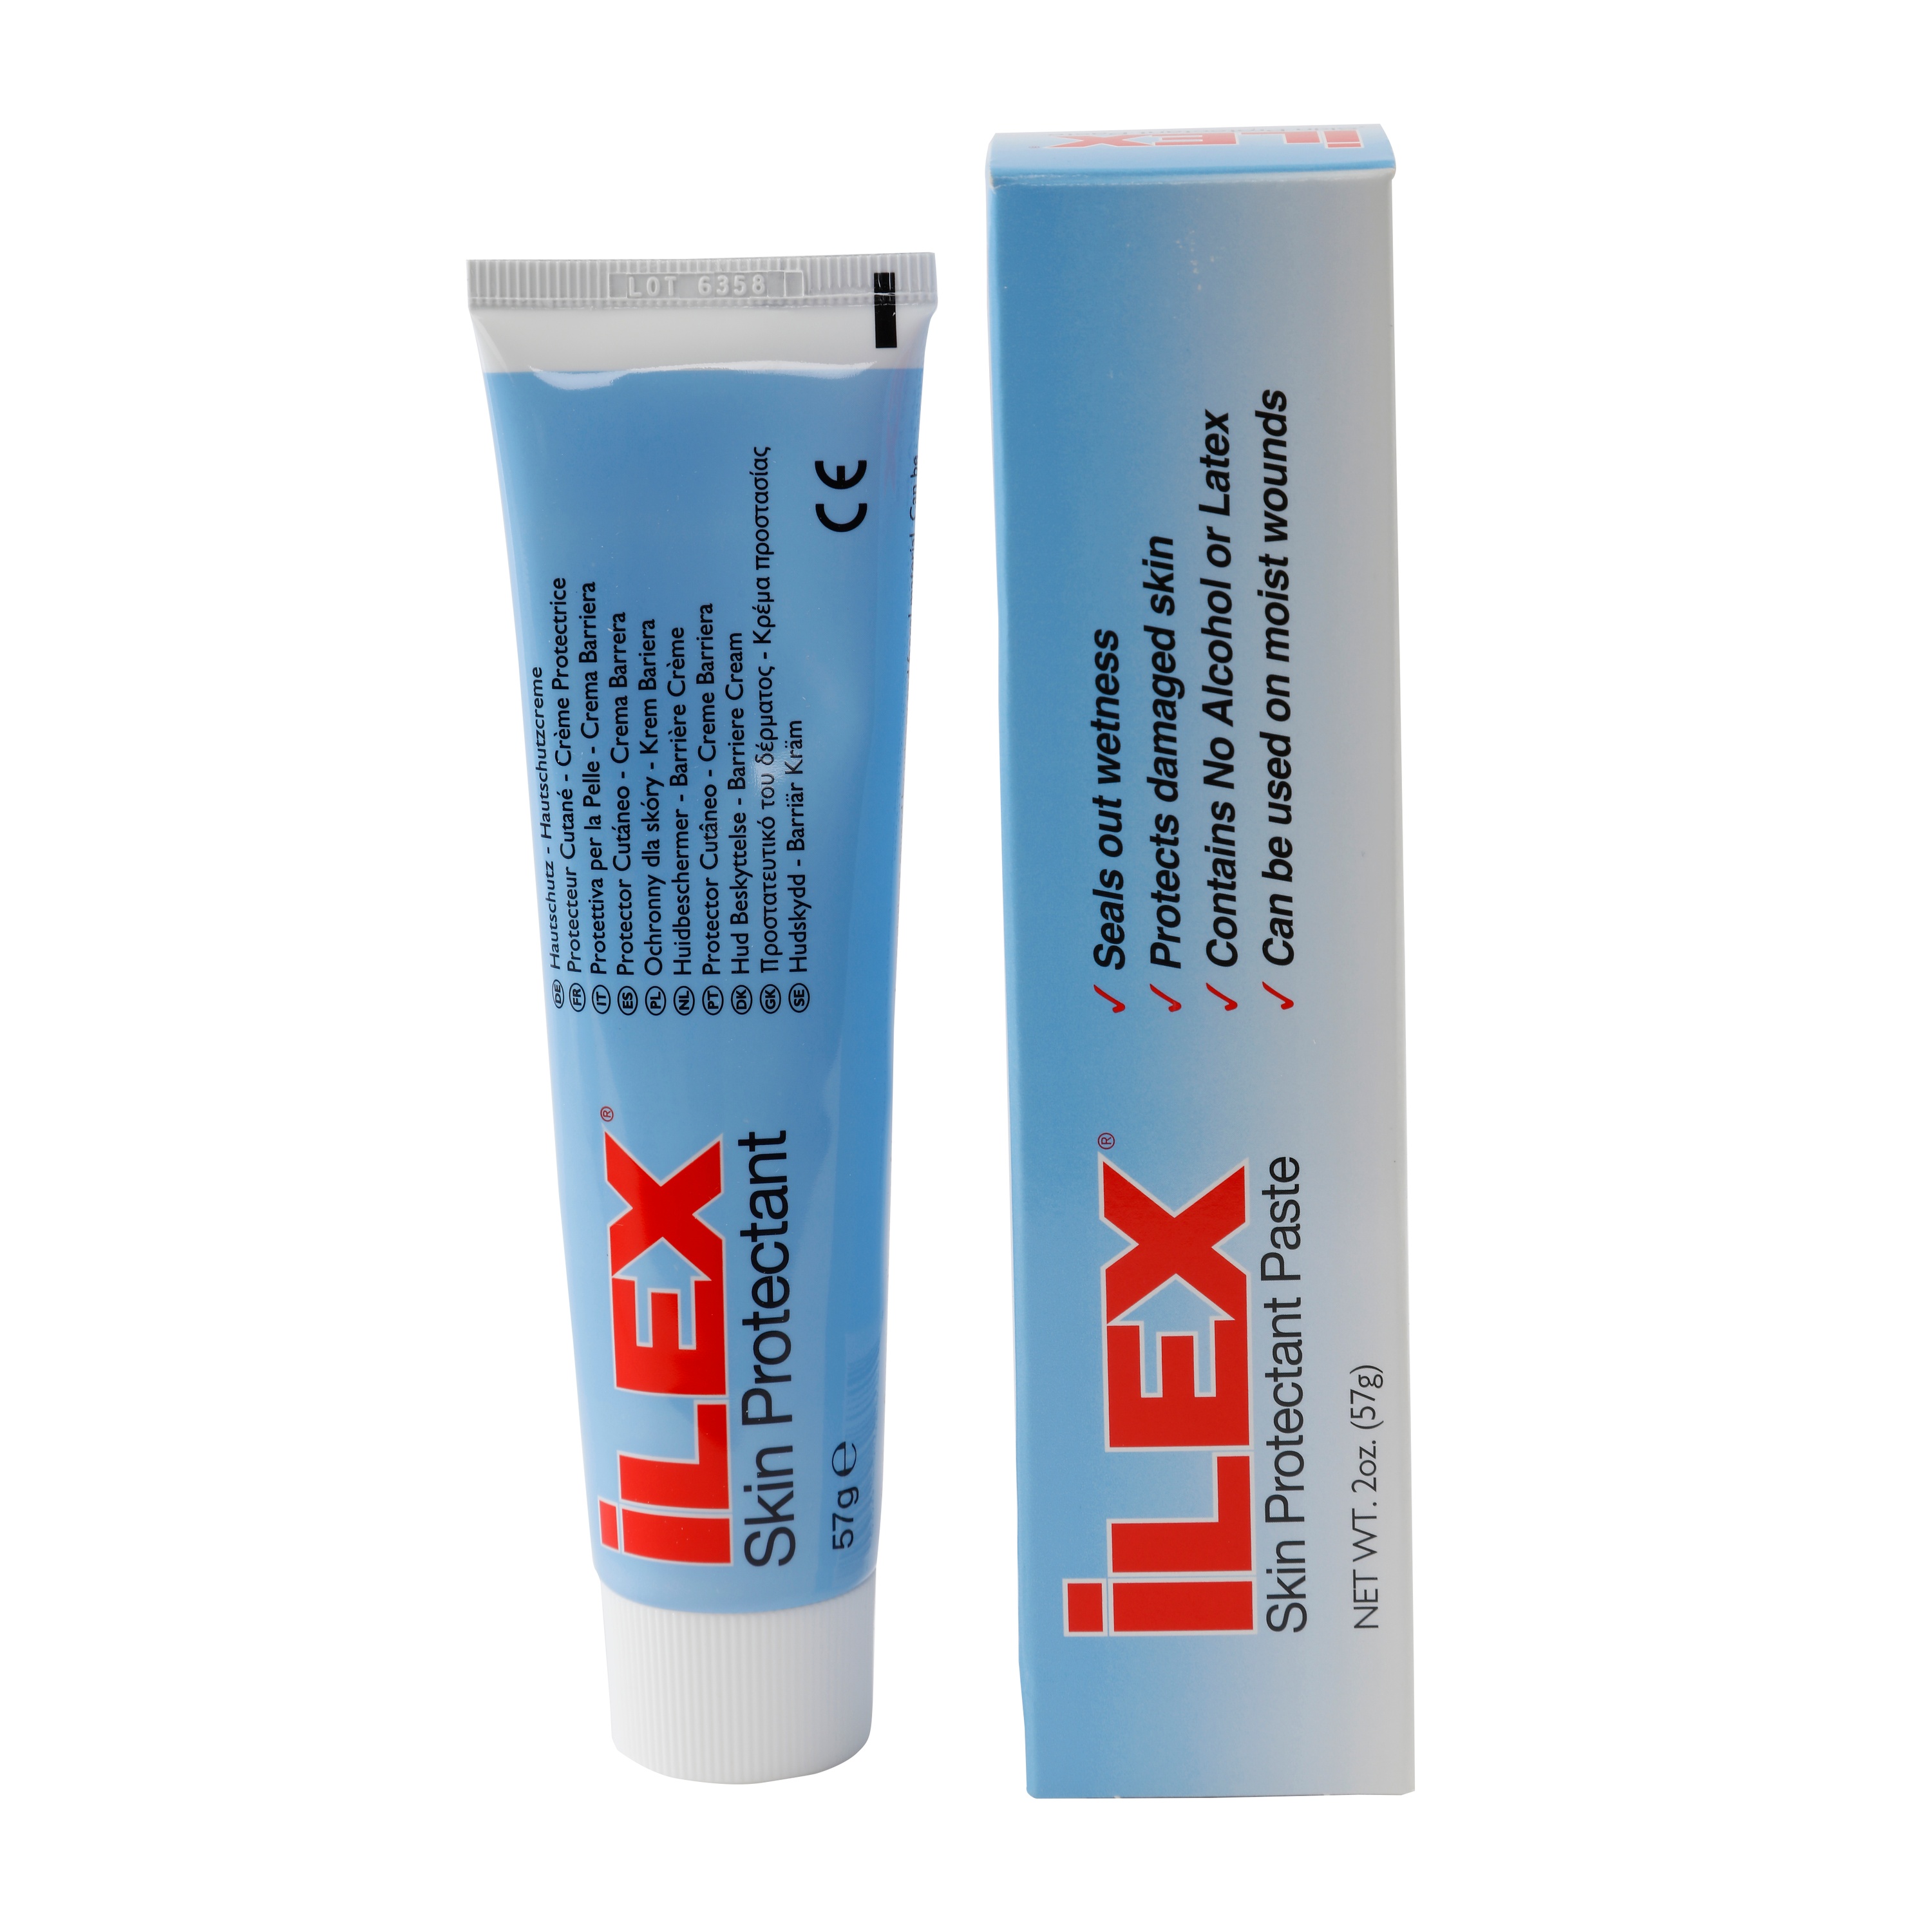 iLEX Paste (57g Tube)